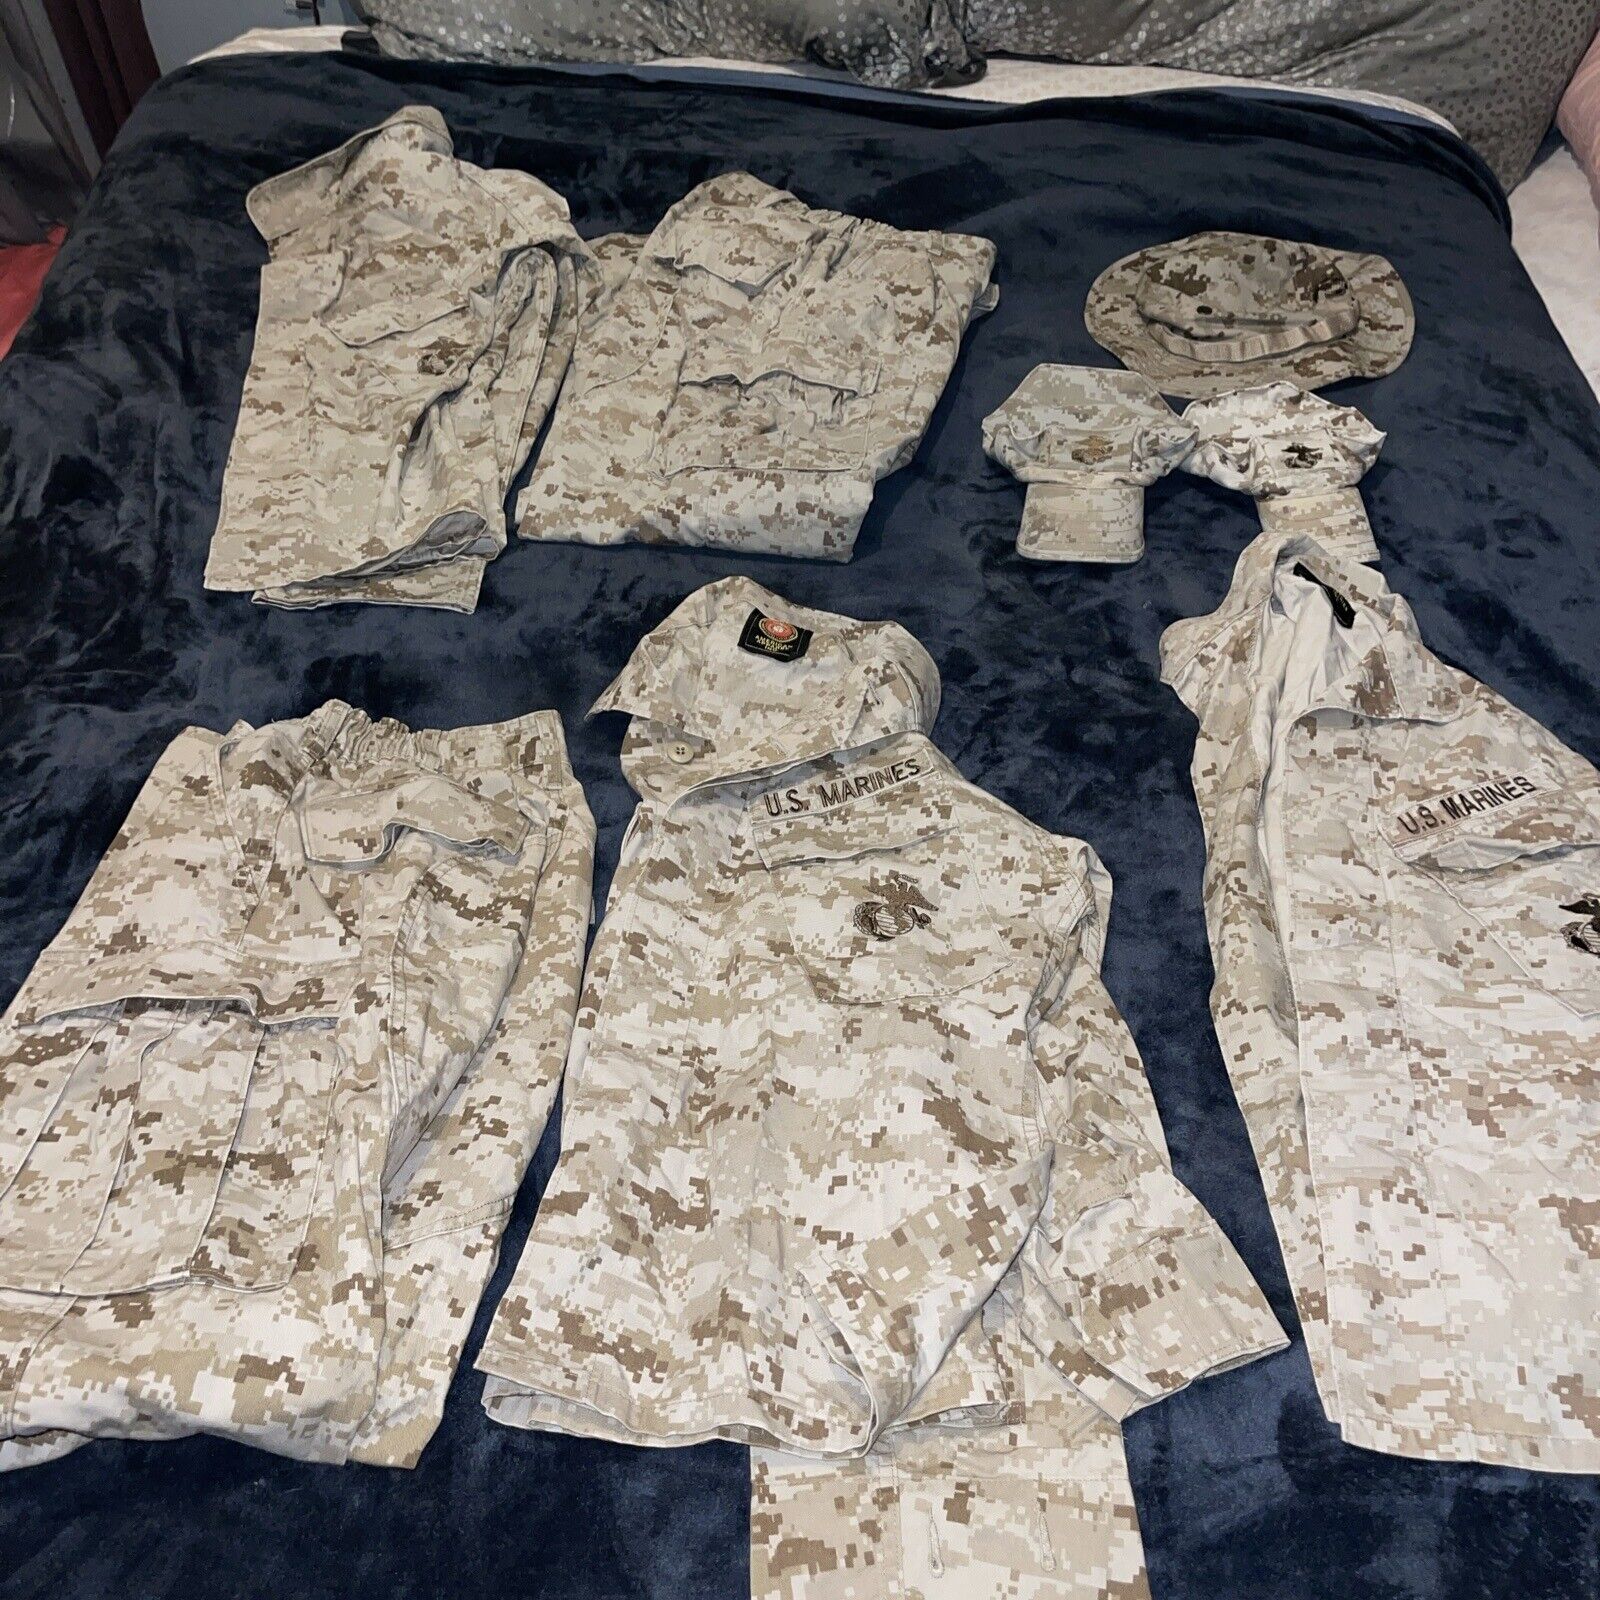 USMC MARPAT Desert Tan Combat Blouse Trousers 2 Full Sets, 1 Blouse